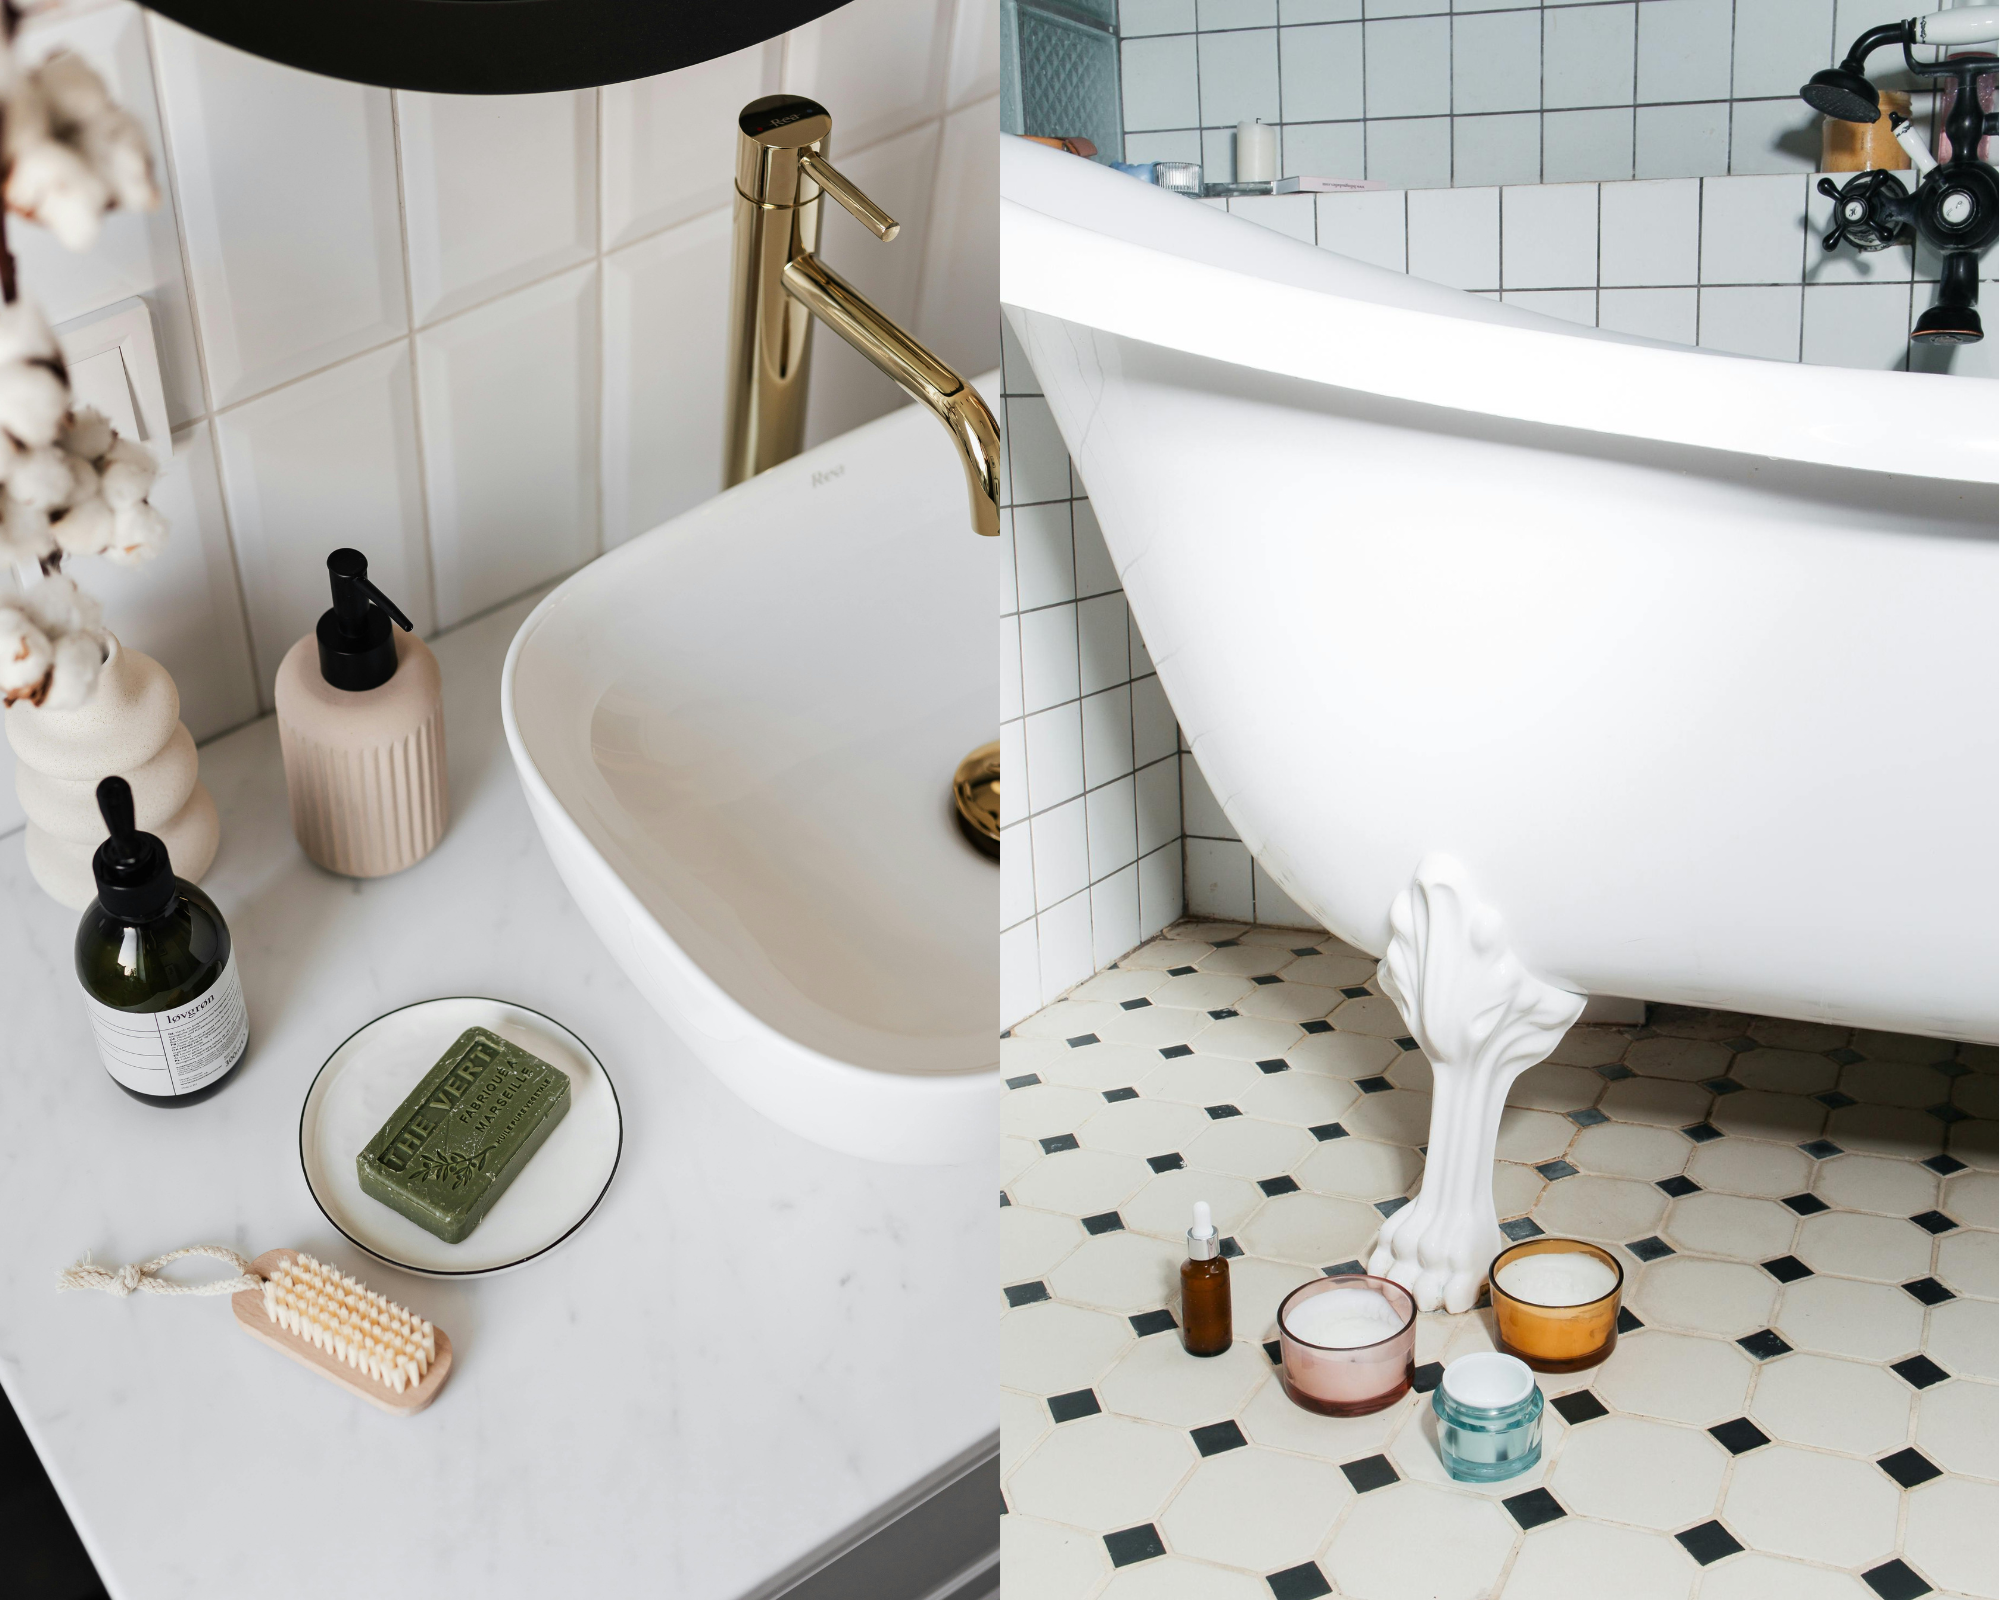 Meki minimalizam, dizajn na dodir i drugi trendovi za kupatilo